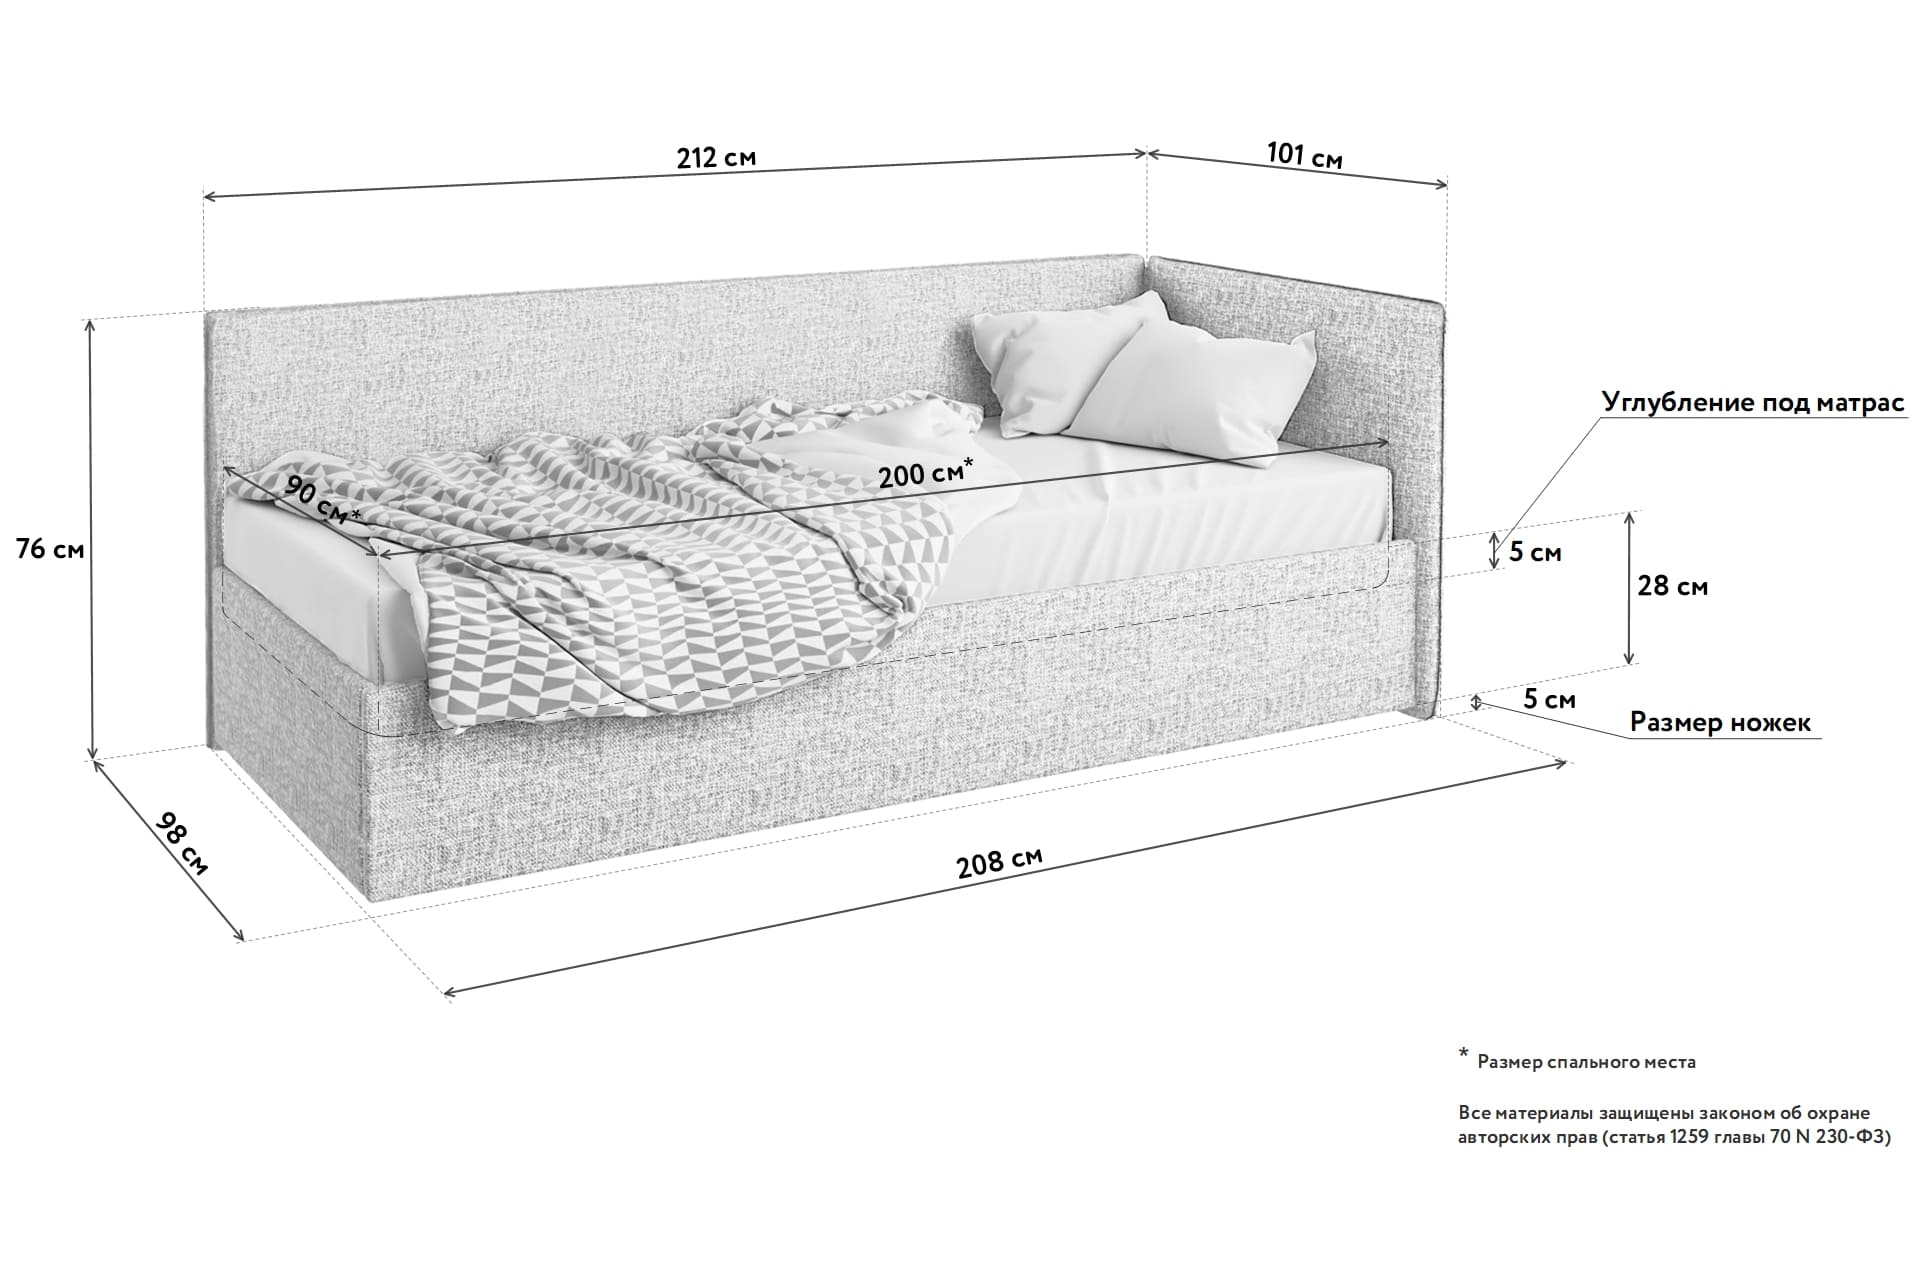 кровать размер 120 на 200